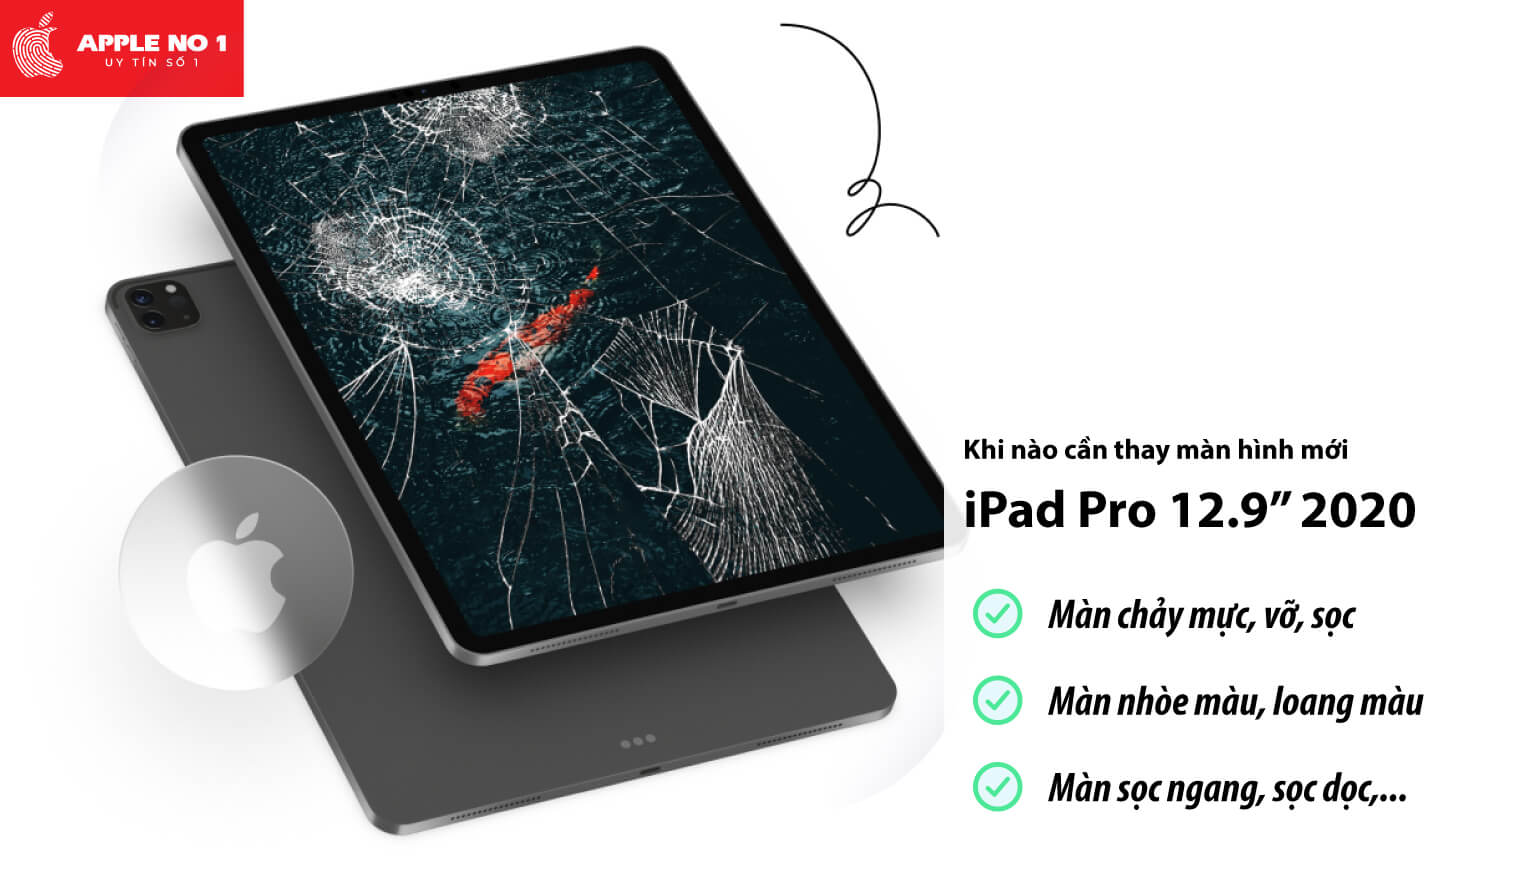 Thay màn hình iPad Pro 12.9 inch 2020 khi nào?